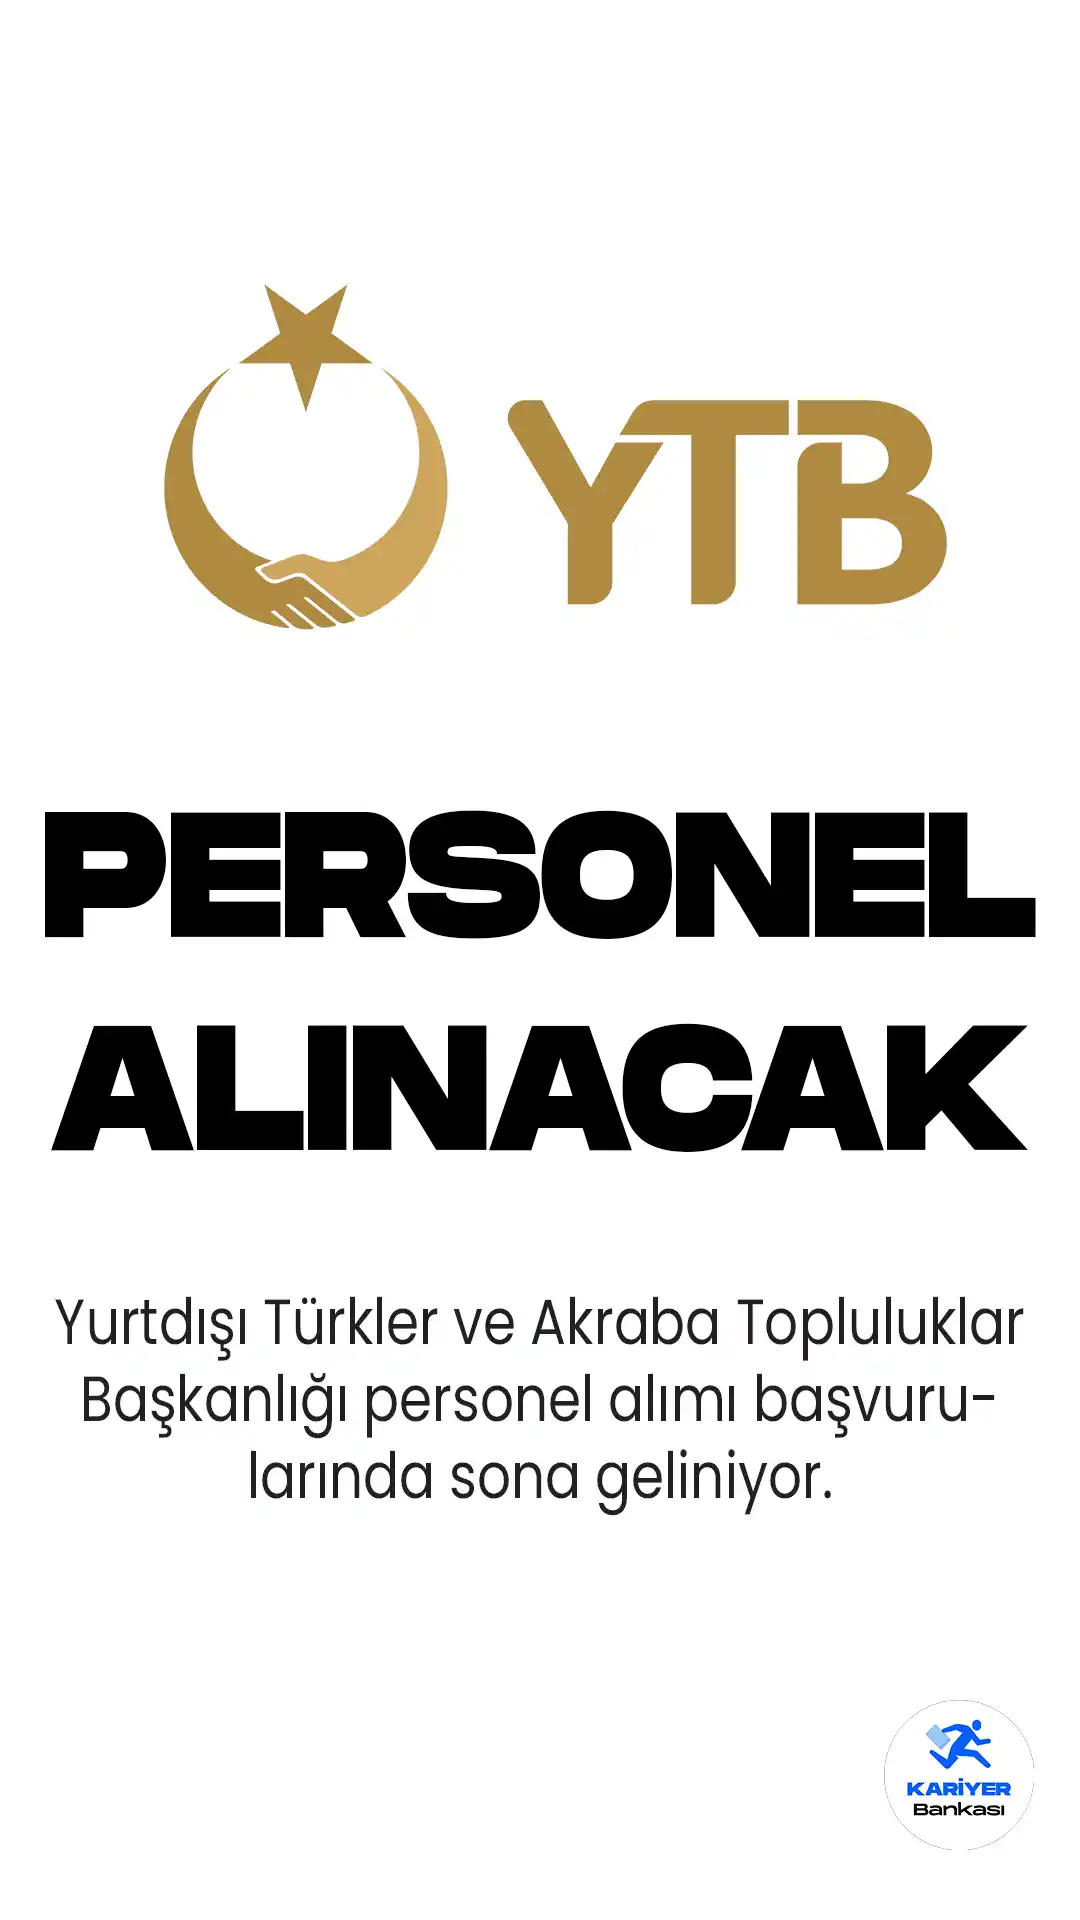 Yurtdışı Türkler ve Akraba Topluluklar Başkanlığı personel alımı başvuruları sona eriyor. YTB personel alımı için 24 Nisan'da başlayan başvurular 8 Mayıs saat 18.00 itibariyle sona erecek.